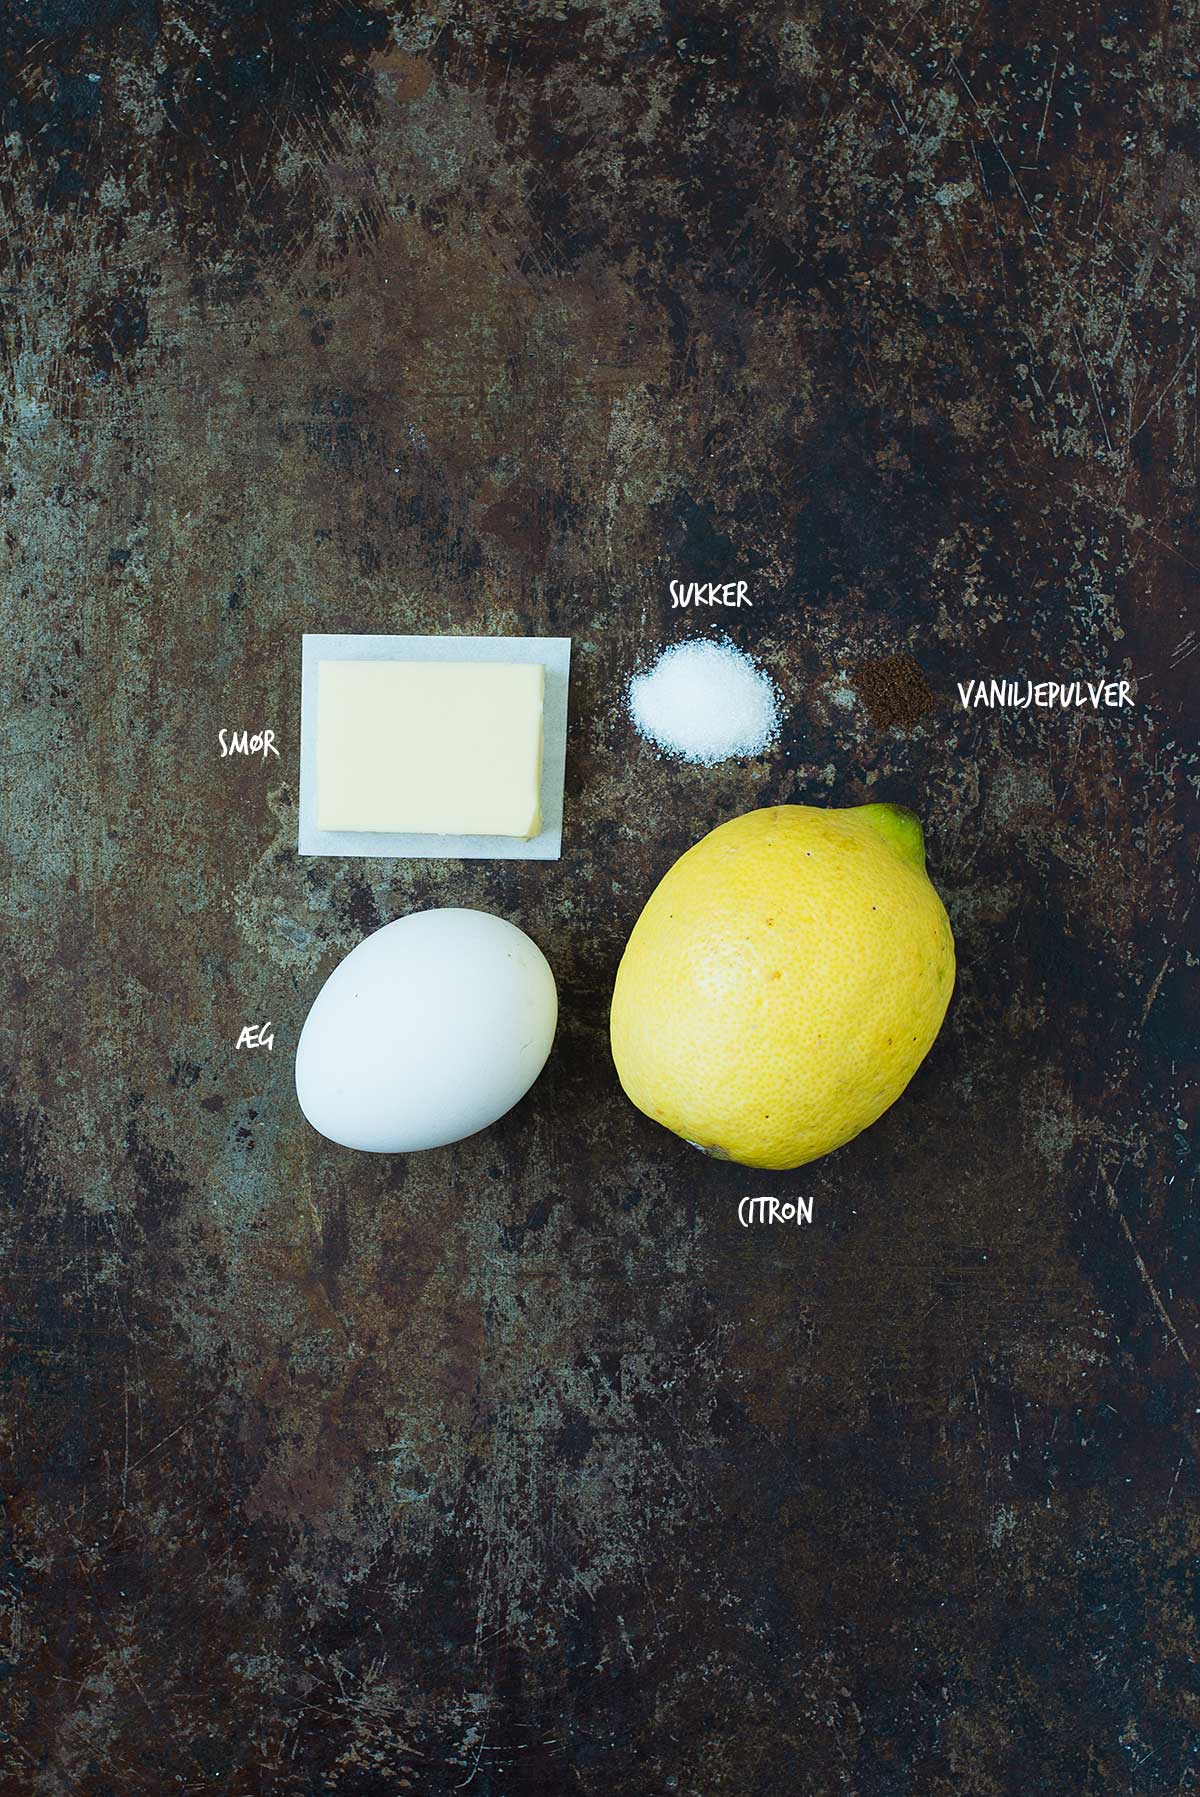 Opskrift: Lemon curd | Frk. Kræsen